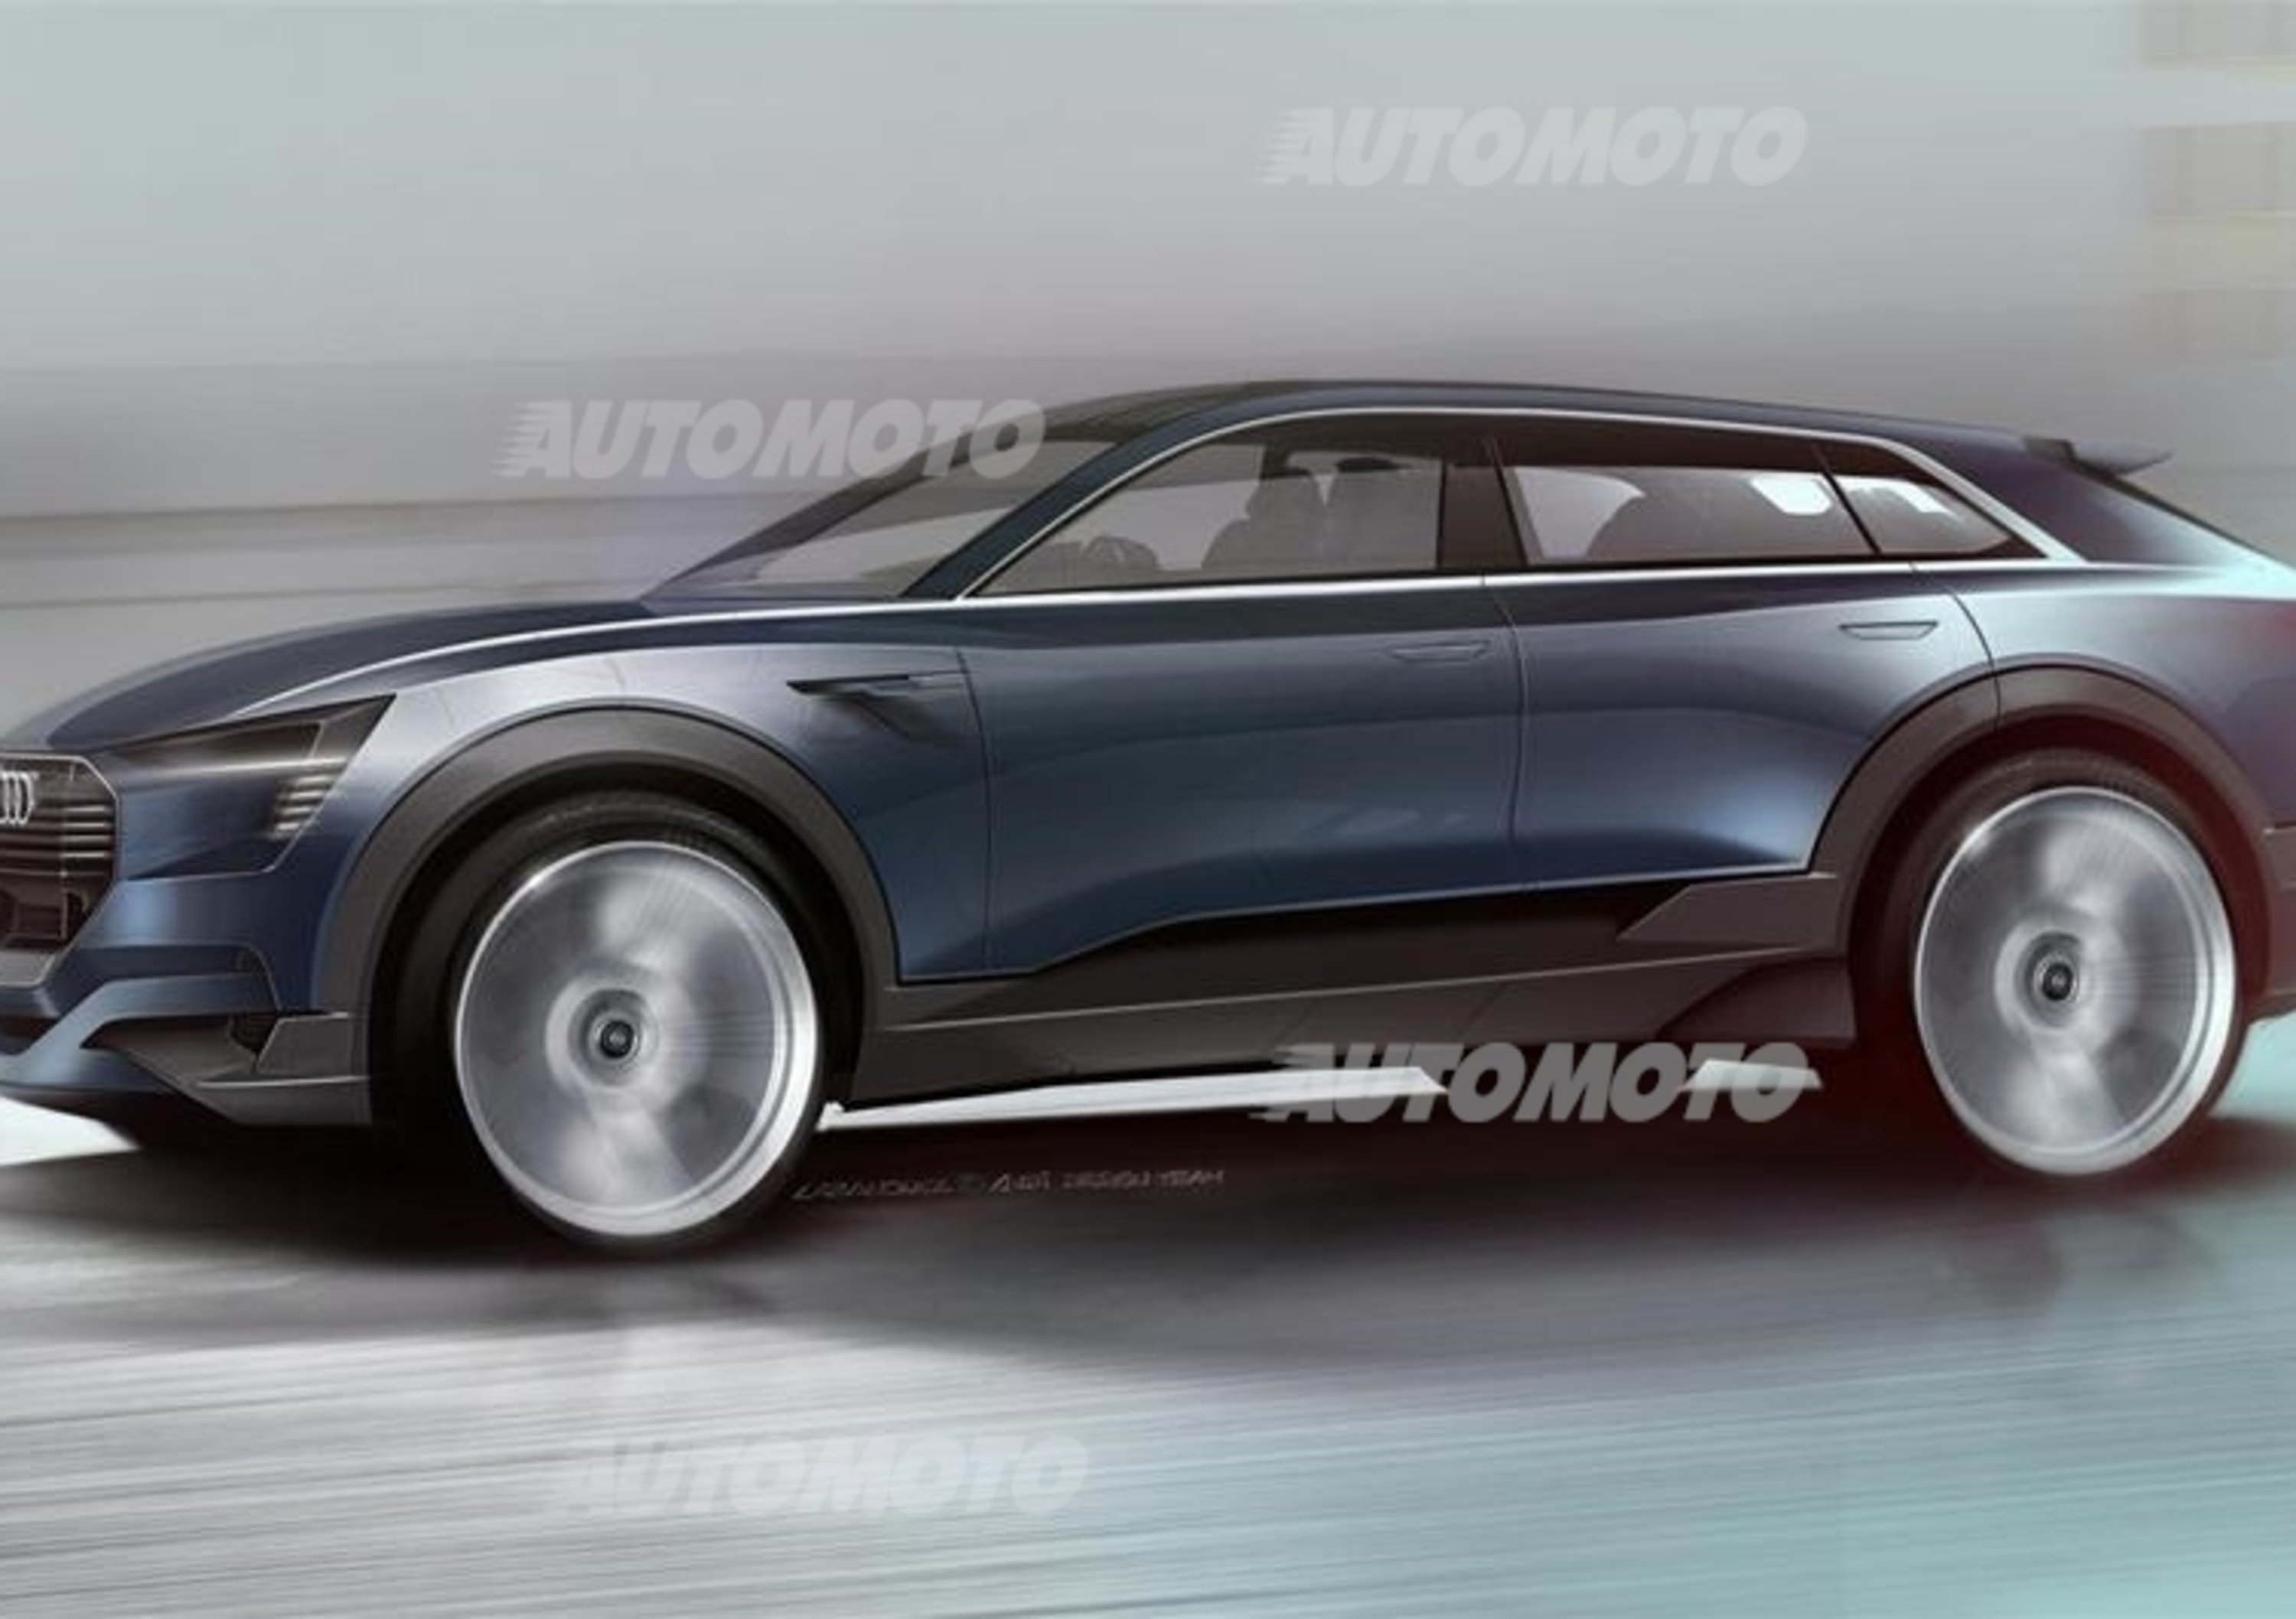 Audi Q6, ecco la versione elettrica e-tron quattro concept